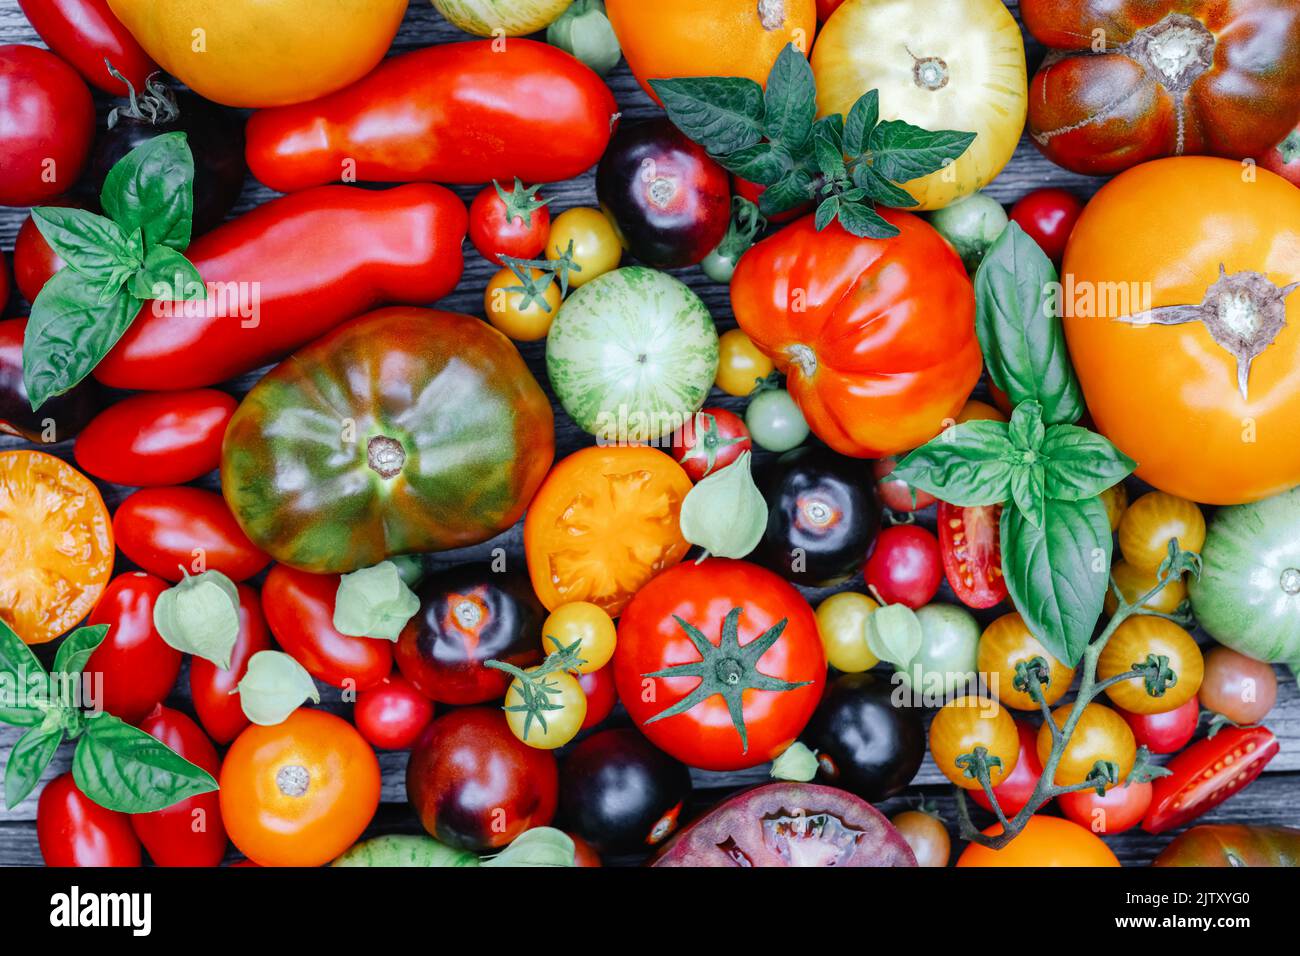 Différentes variétés Type de mélange de tomate rouge, jaune, verte et noire. Fond de tomates d'été colorées et fraîches, gros plan. Photographie alimentaire Banque D'Images